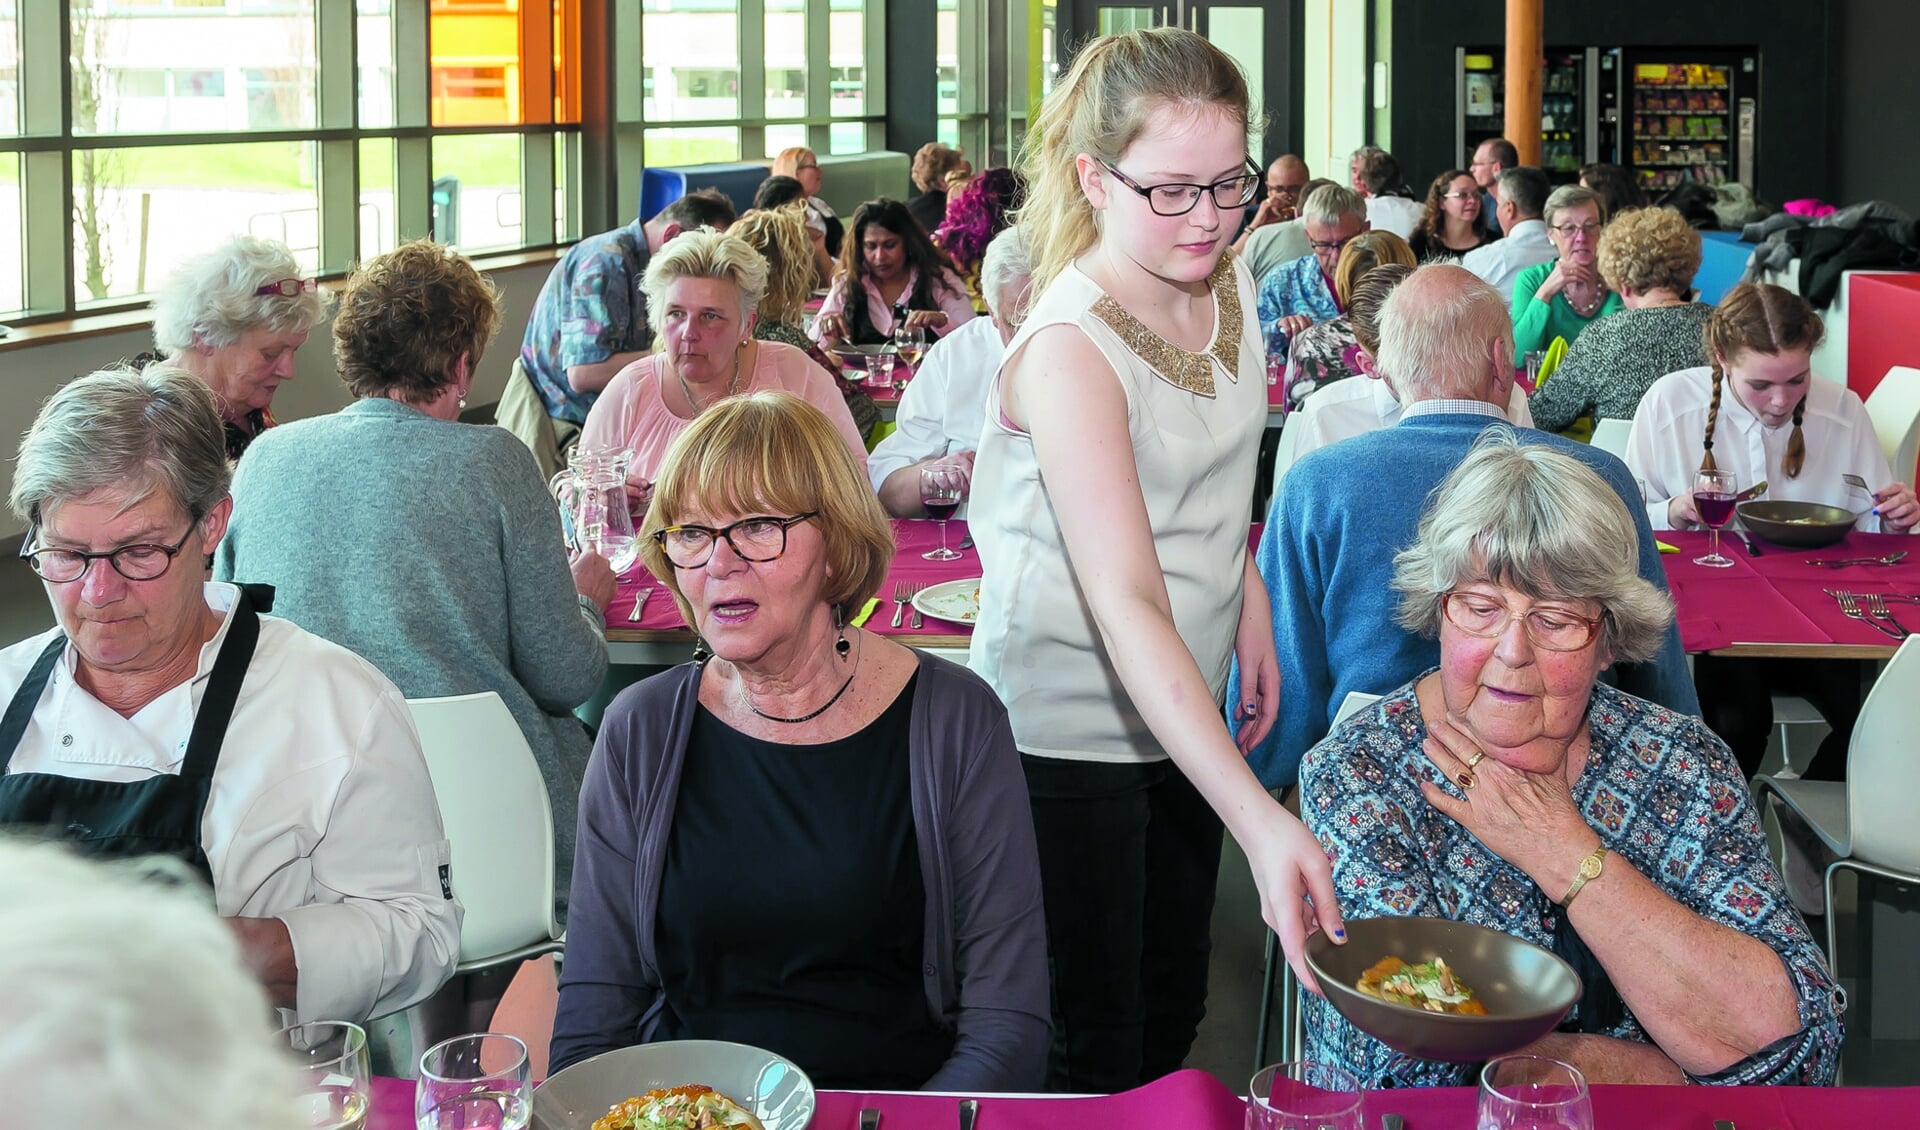 De gerechten werden geserveerd door leerlingen van Gerrit Rietveld. Het diner werd zeer gewaardeerd door de vrijwilligers van de Voedselbank. (Foto: Han Giskes)